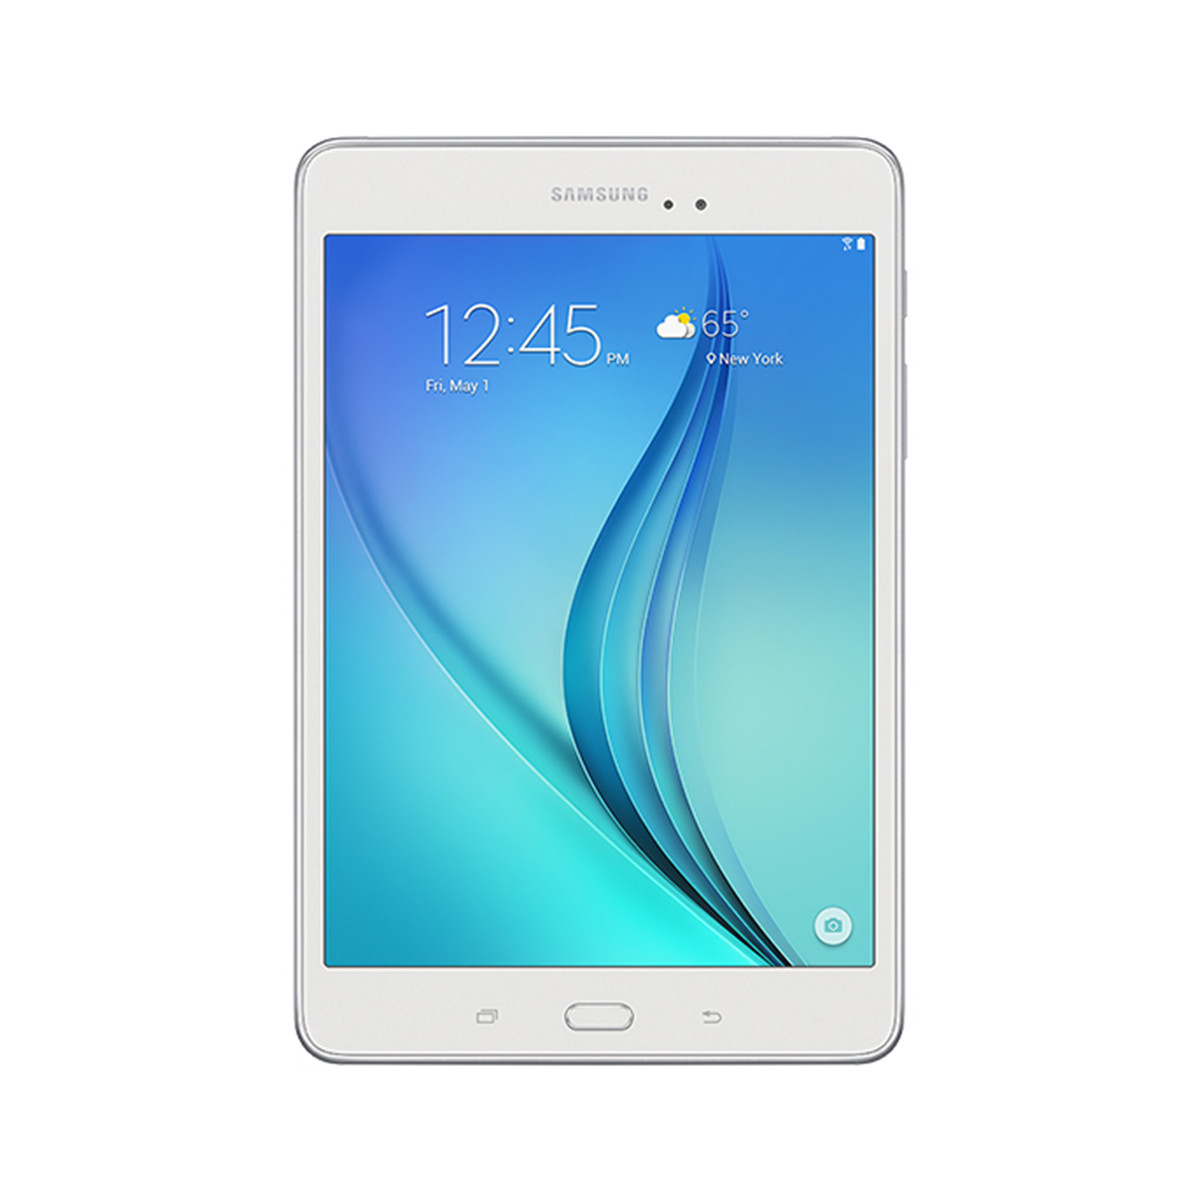 Máy tính bảng Samsung Galaxy Tab A 8.0 (T355) - 16GB, Wifi + 3G, 8.0 inch